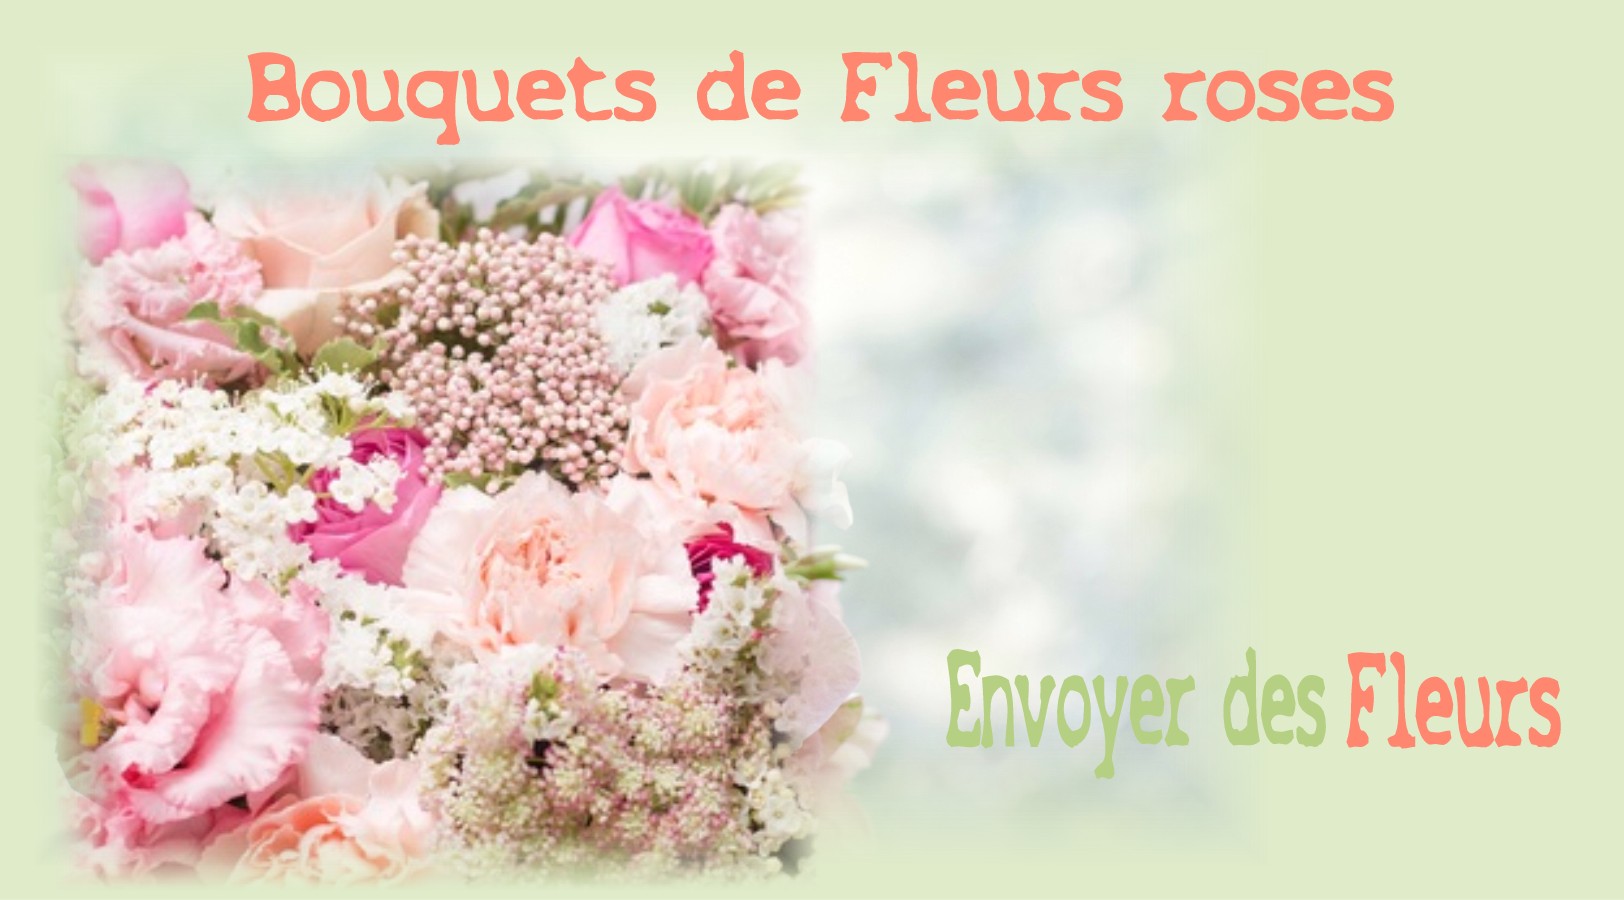 BOUQUETS DE FLEURS ROSES - FLEURISTE de l'AIN - ENVOYER DES FLEURS